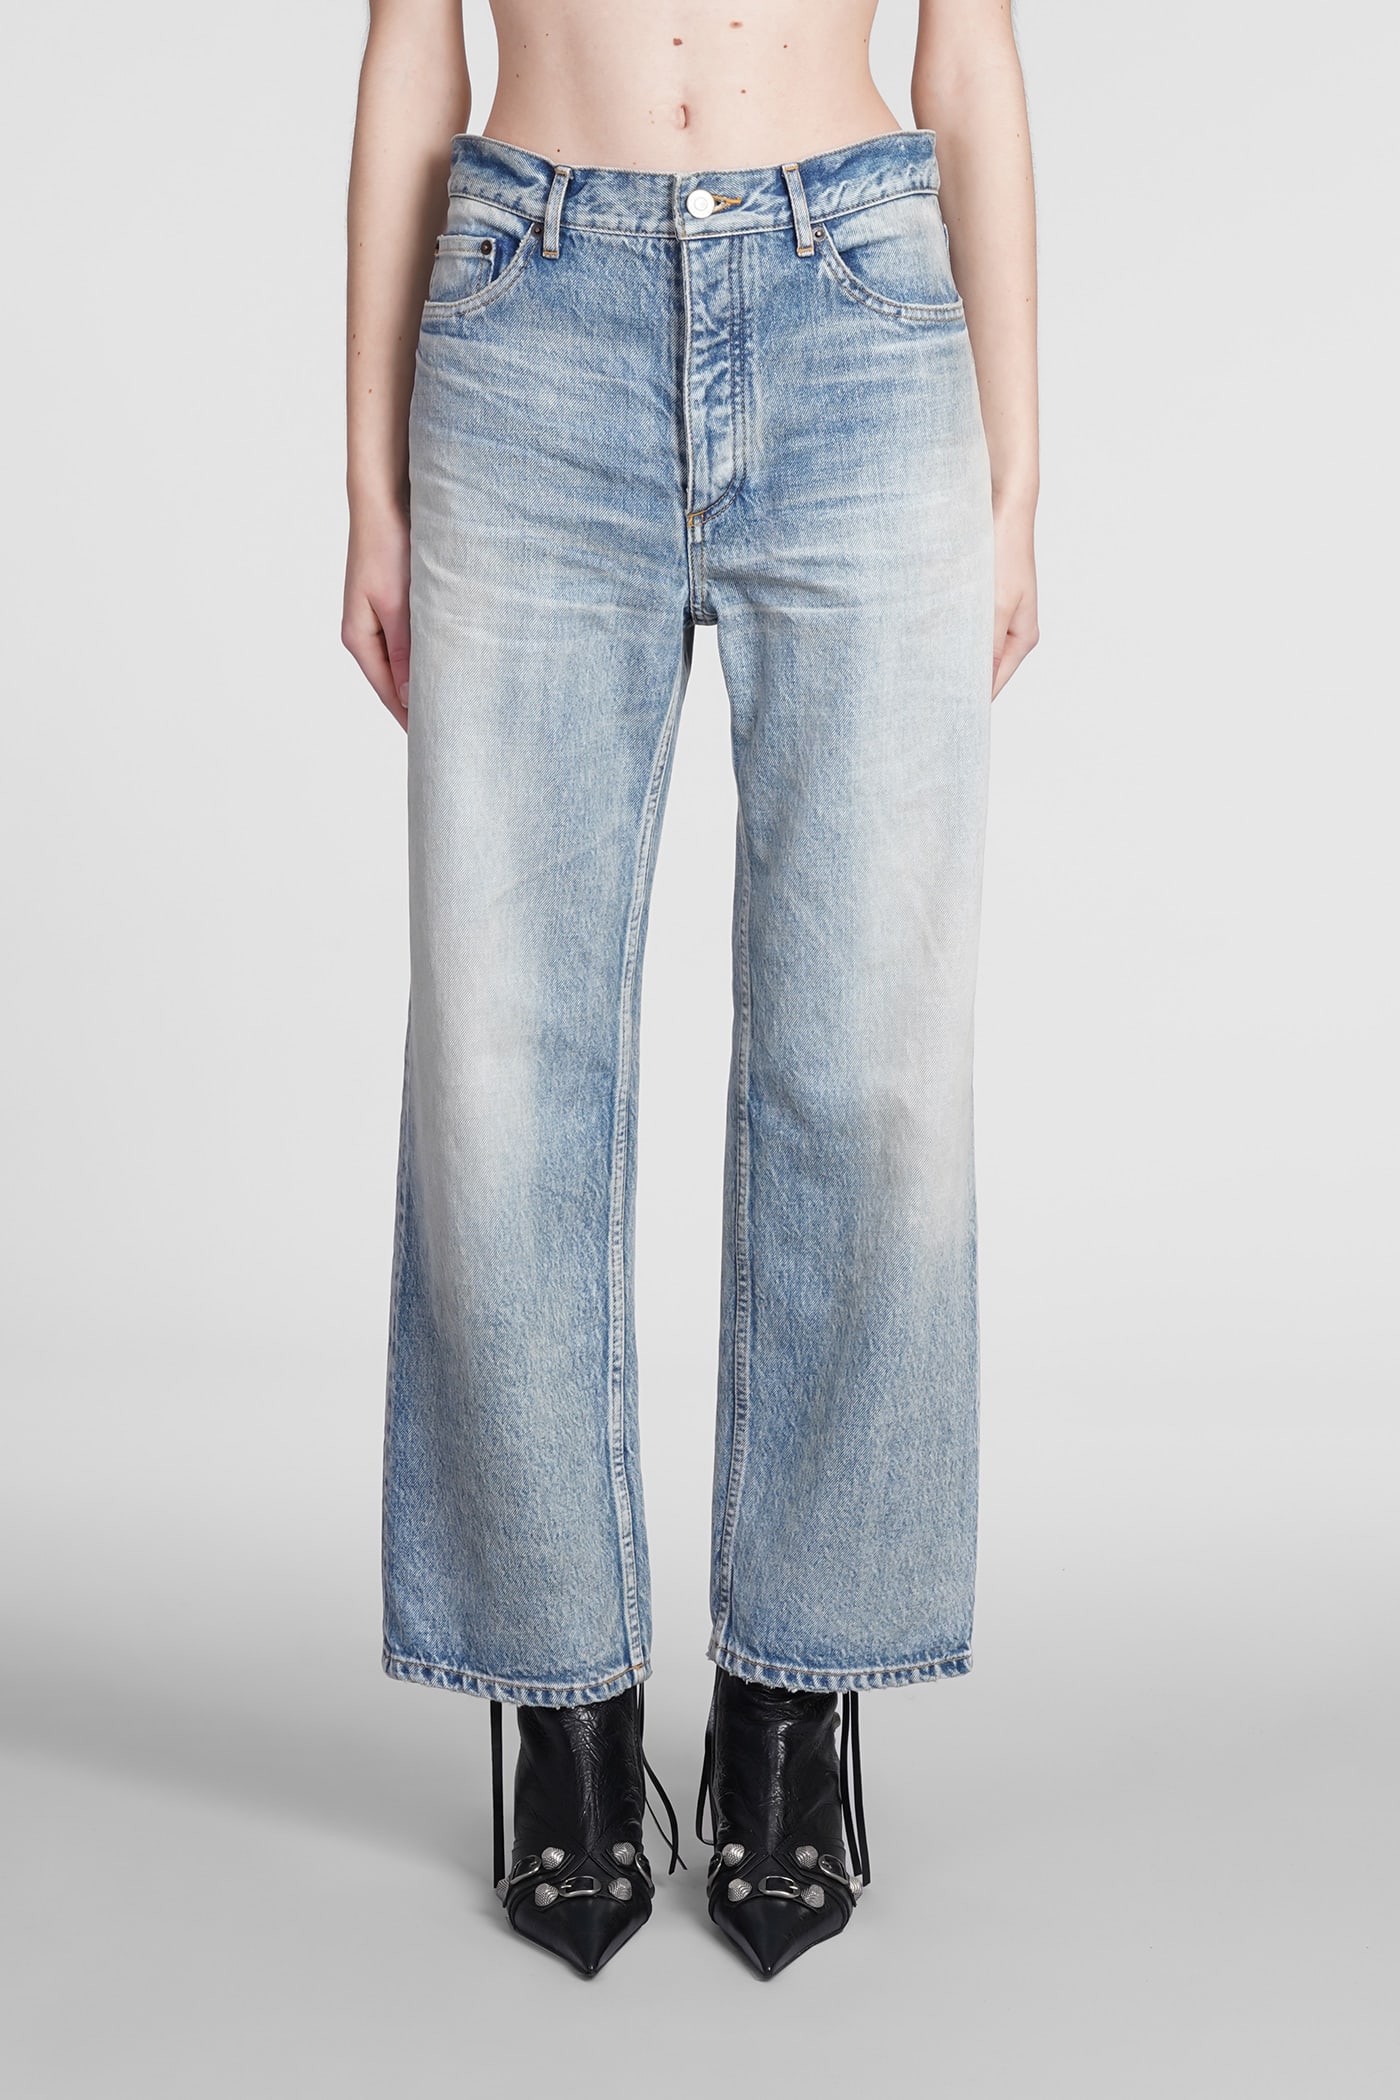 Balenciaga Jeans In Cyan Denim